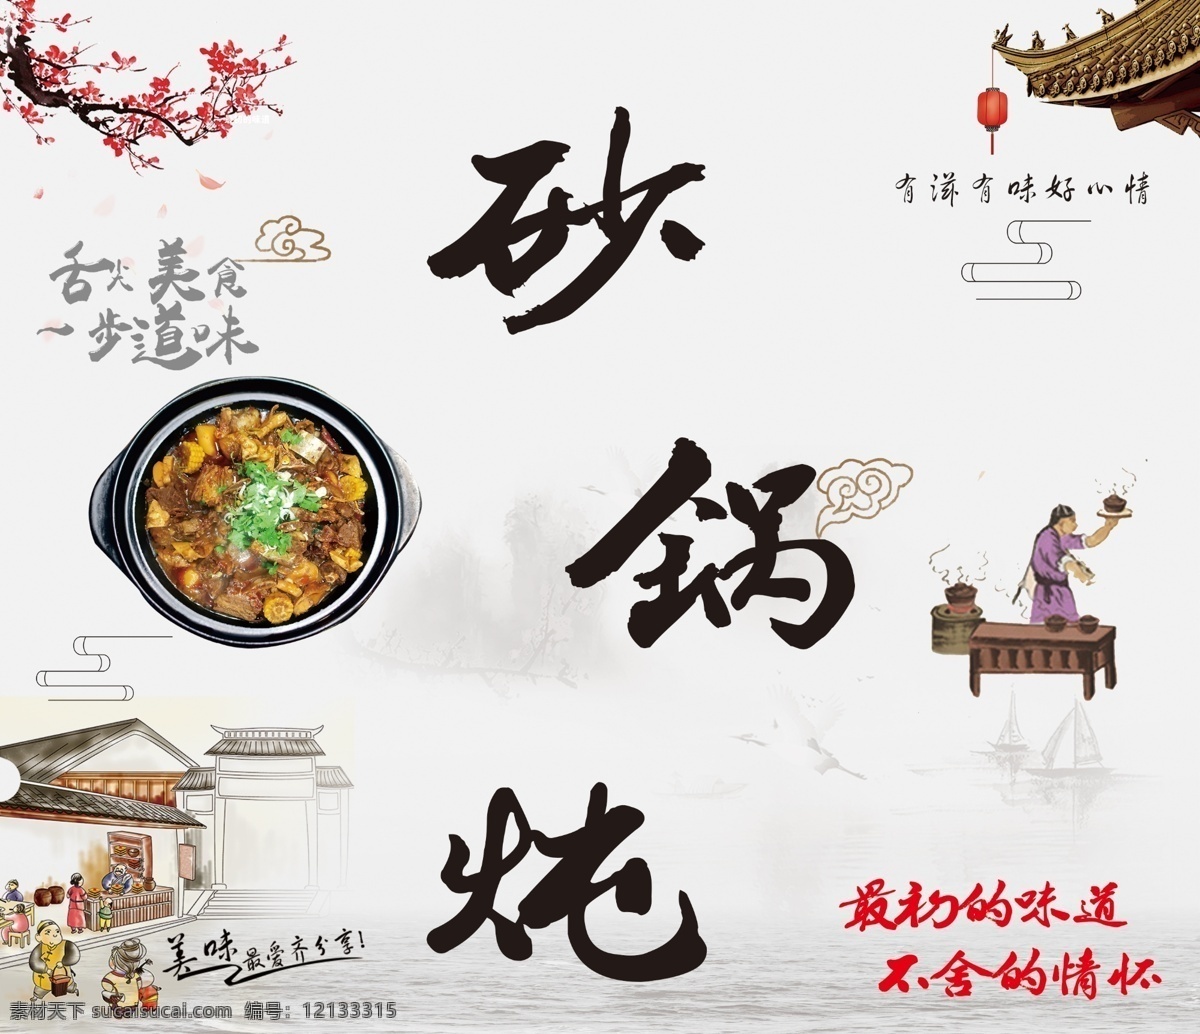 砂锅 炖 海报 舌尖上的美味 砂锅炖的海报 有滋味好心情 砂锅文化精髓 古典艺术的美